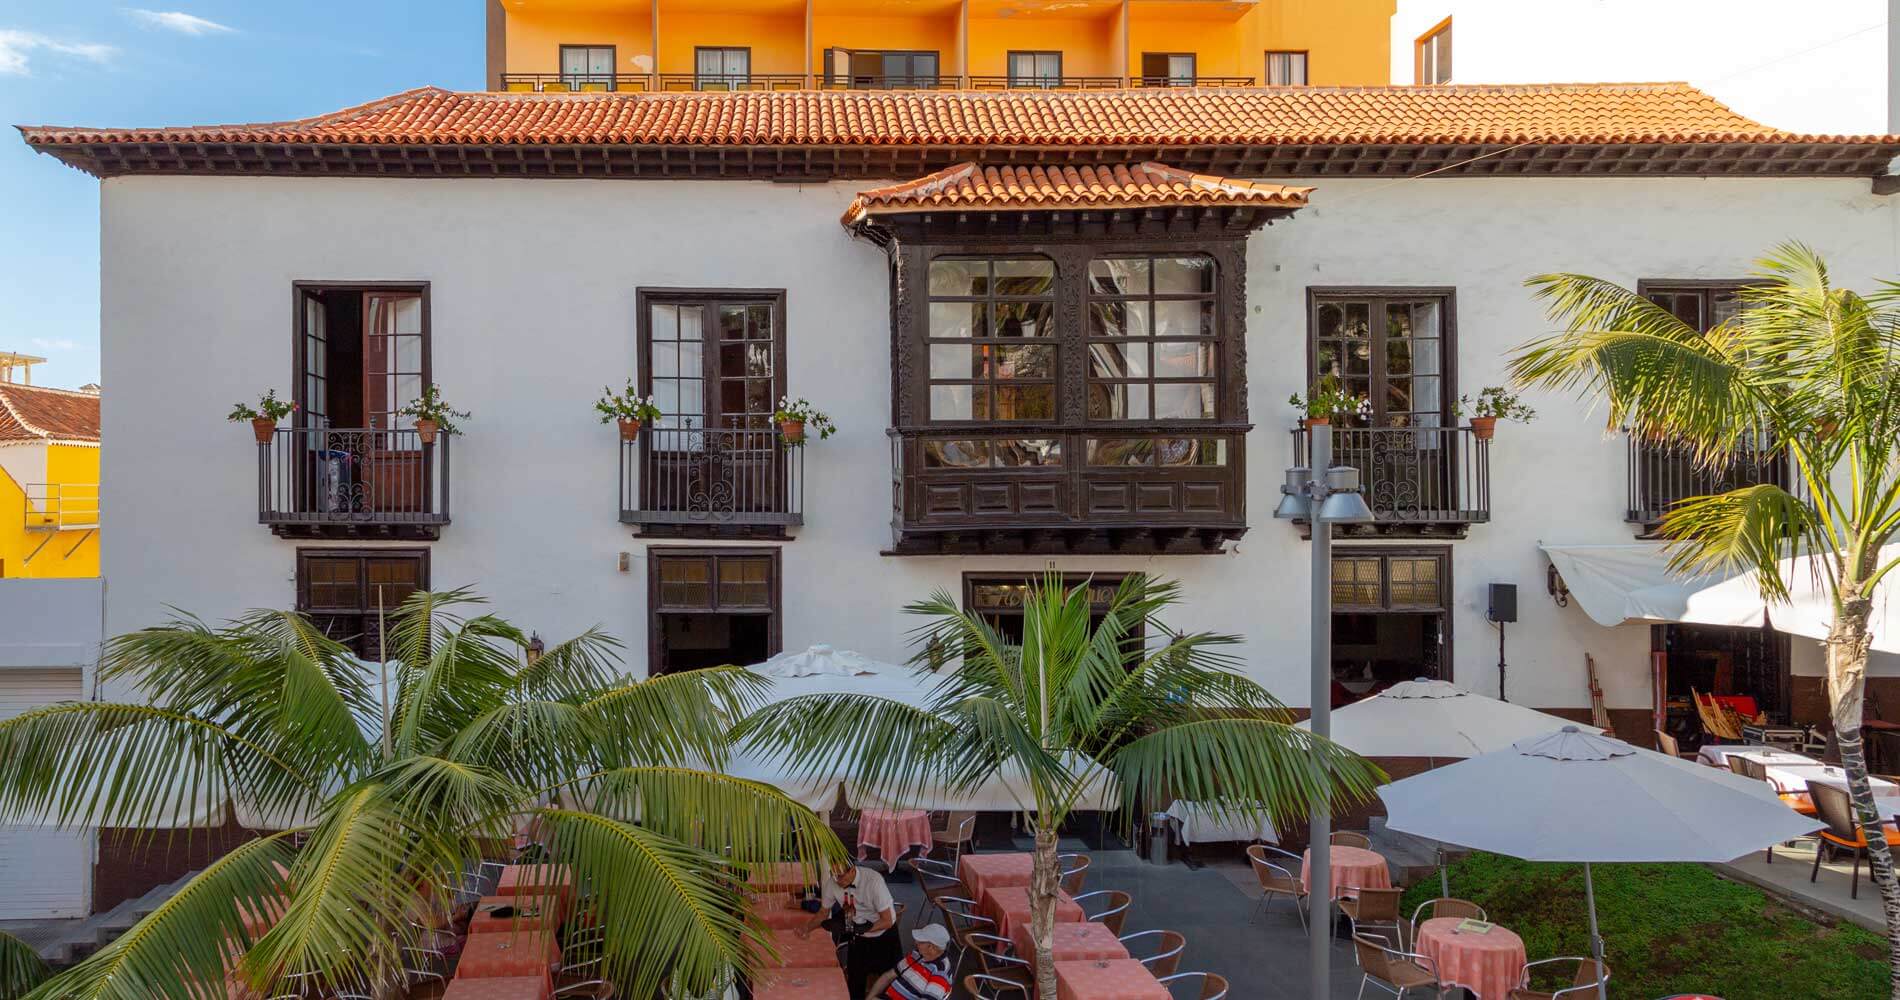 Historia | Hotel Marquesa, Puerto de la Cruz -